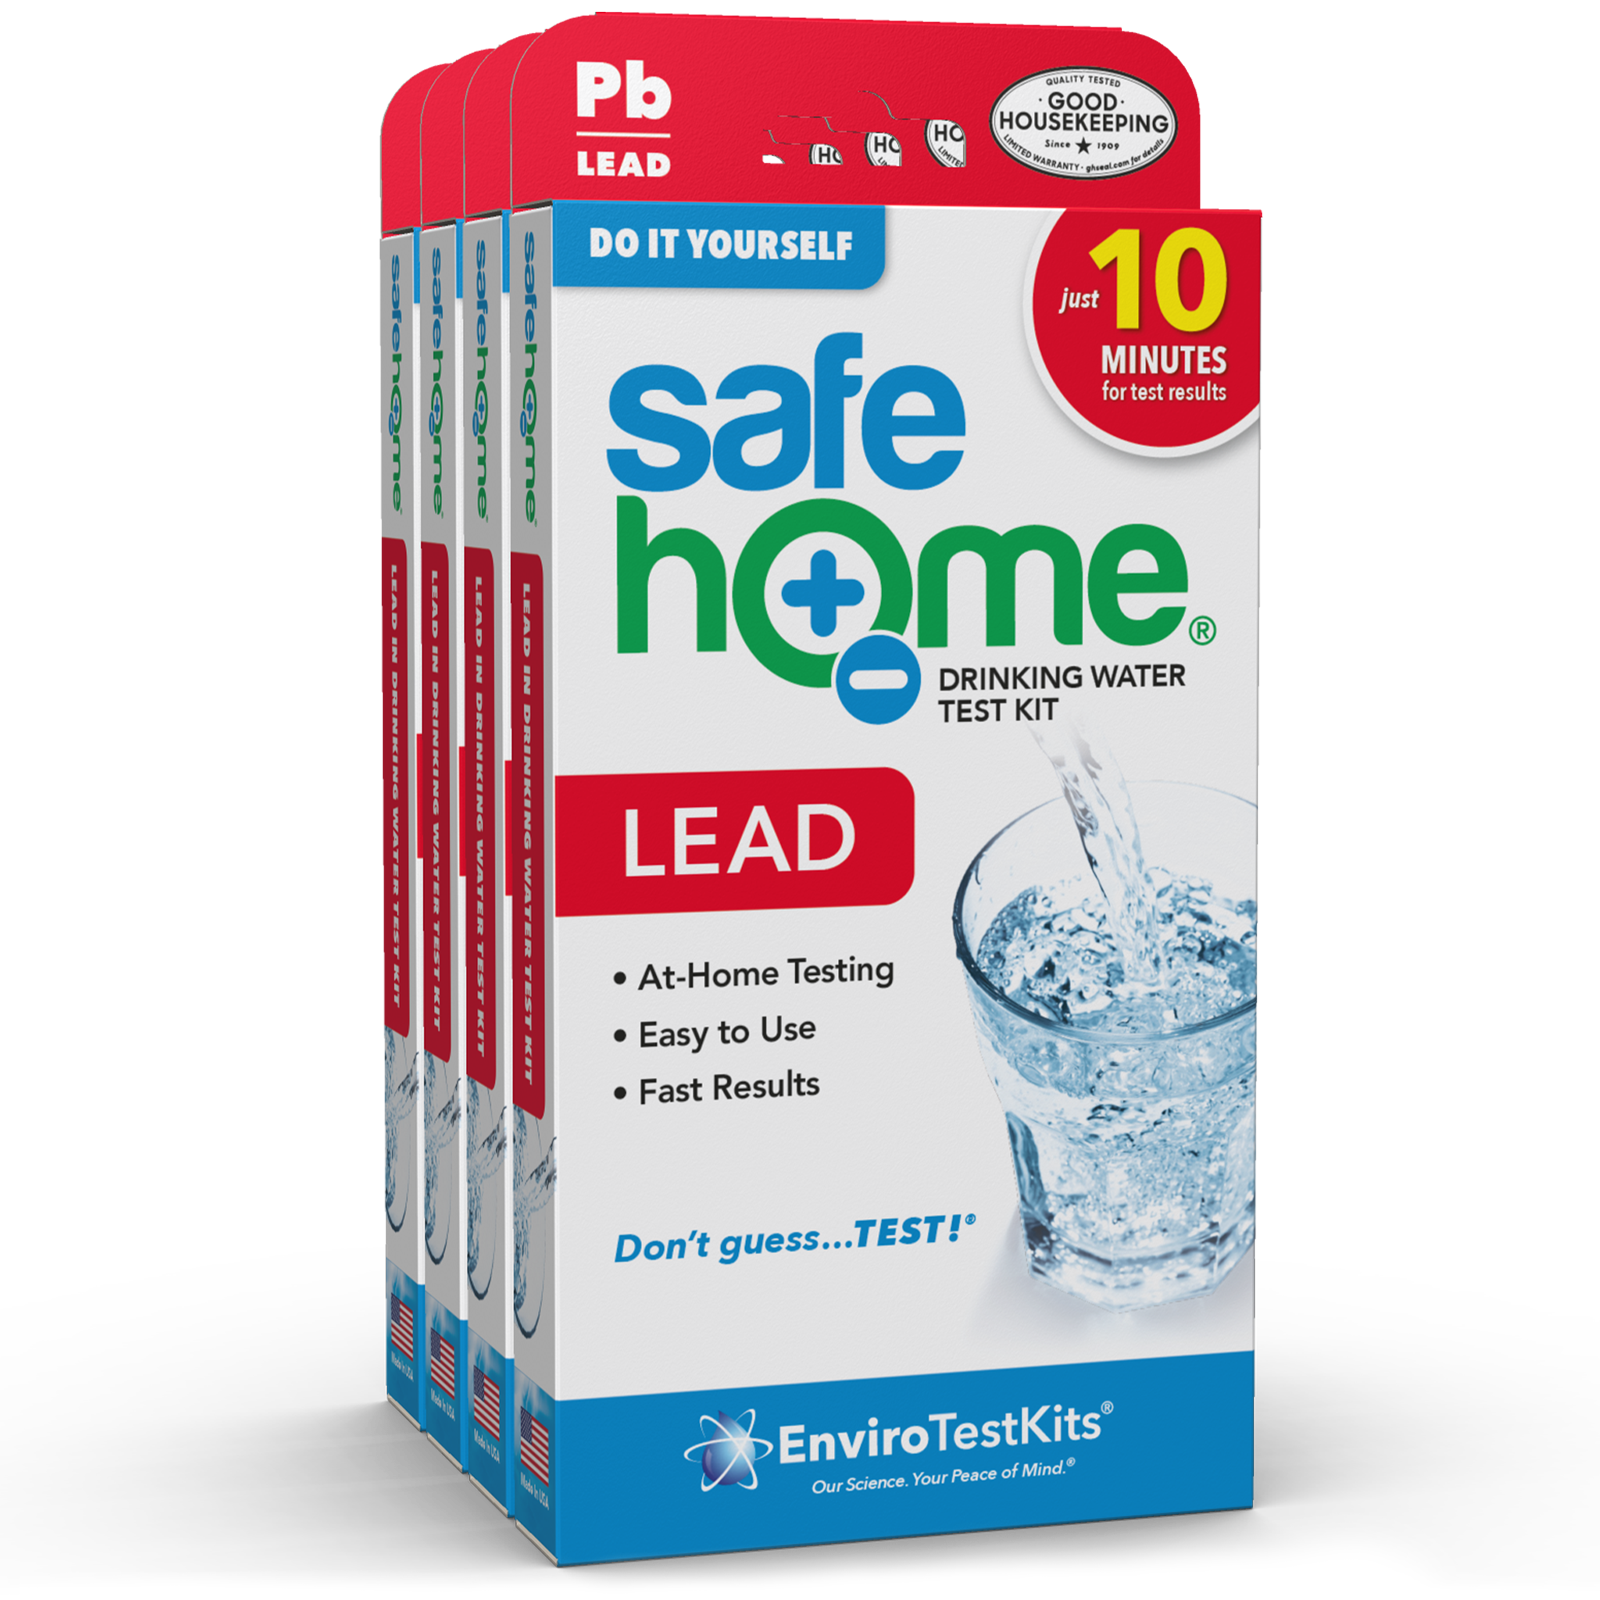 Lead in Drinking Water Test Kit